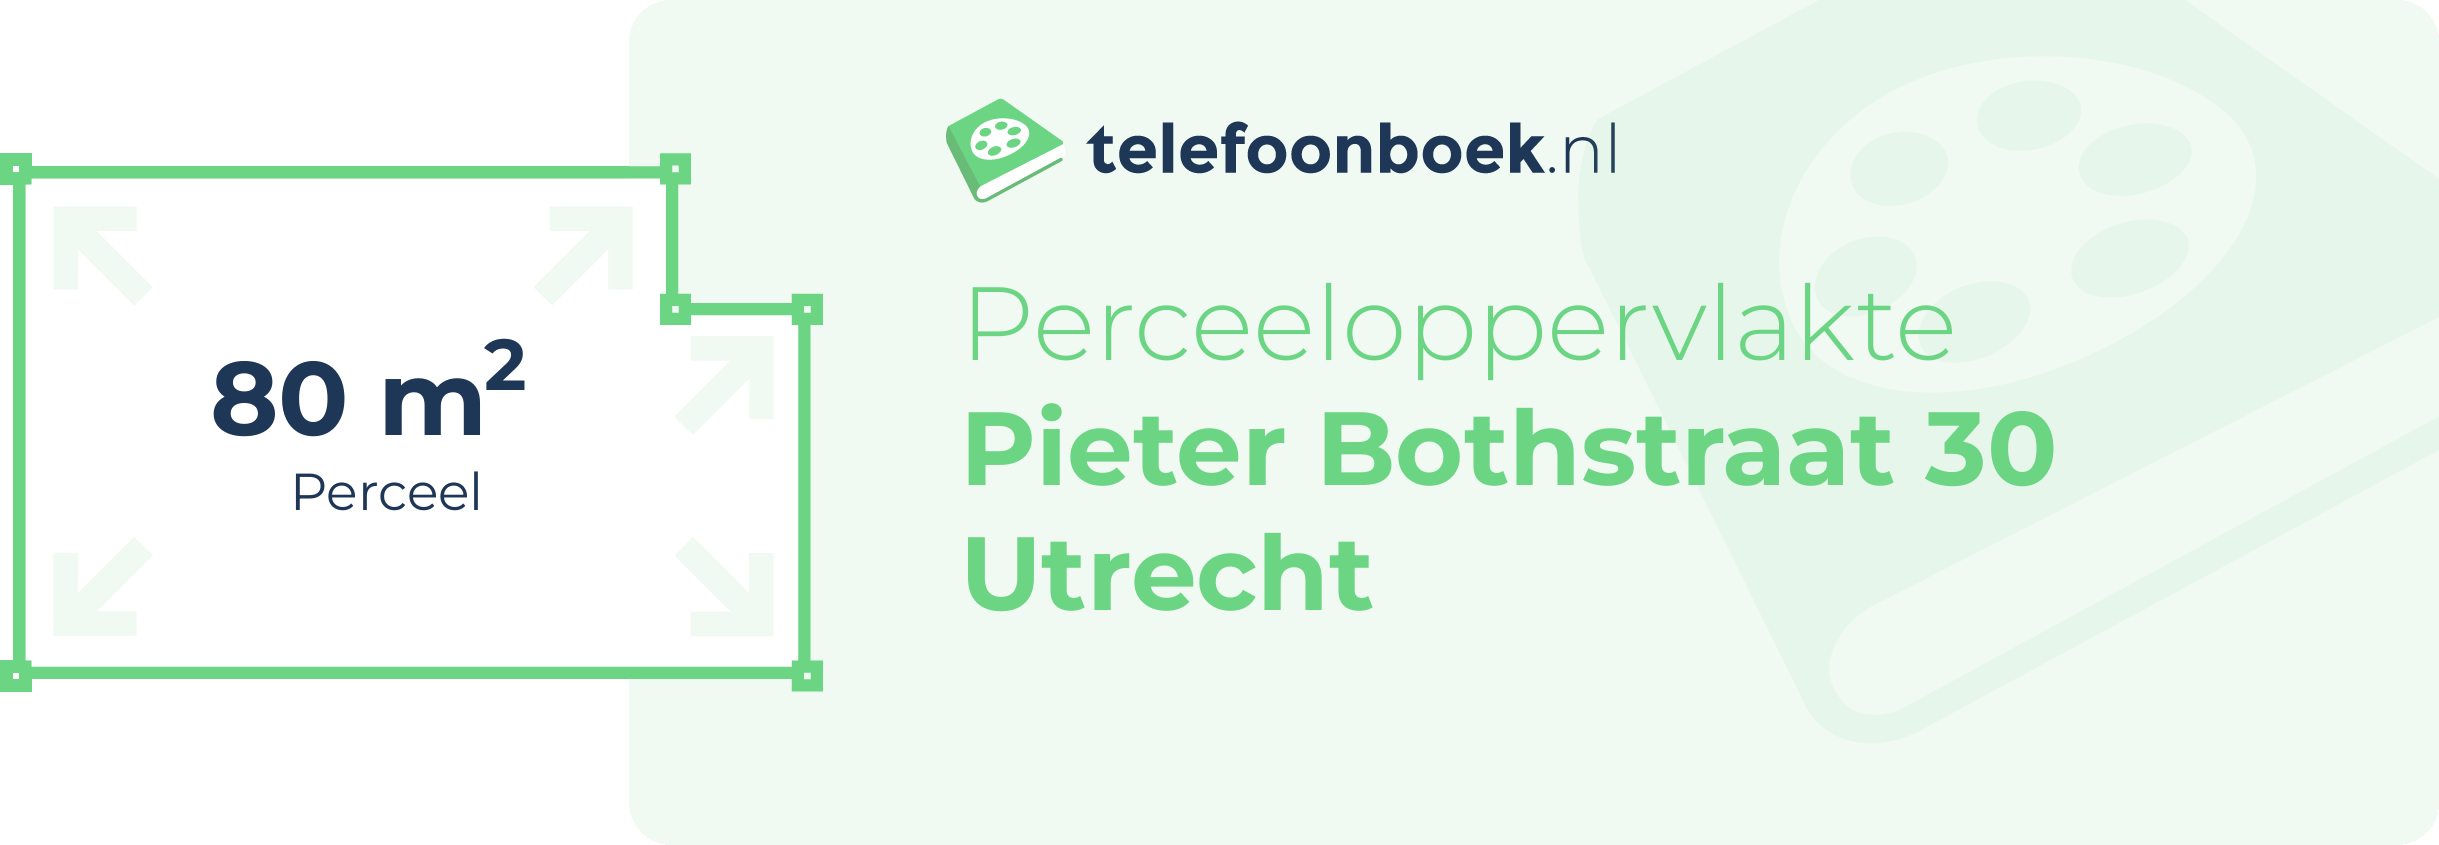 Perceeloppervlakte Pieter Bothstraat 30 Utrecht